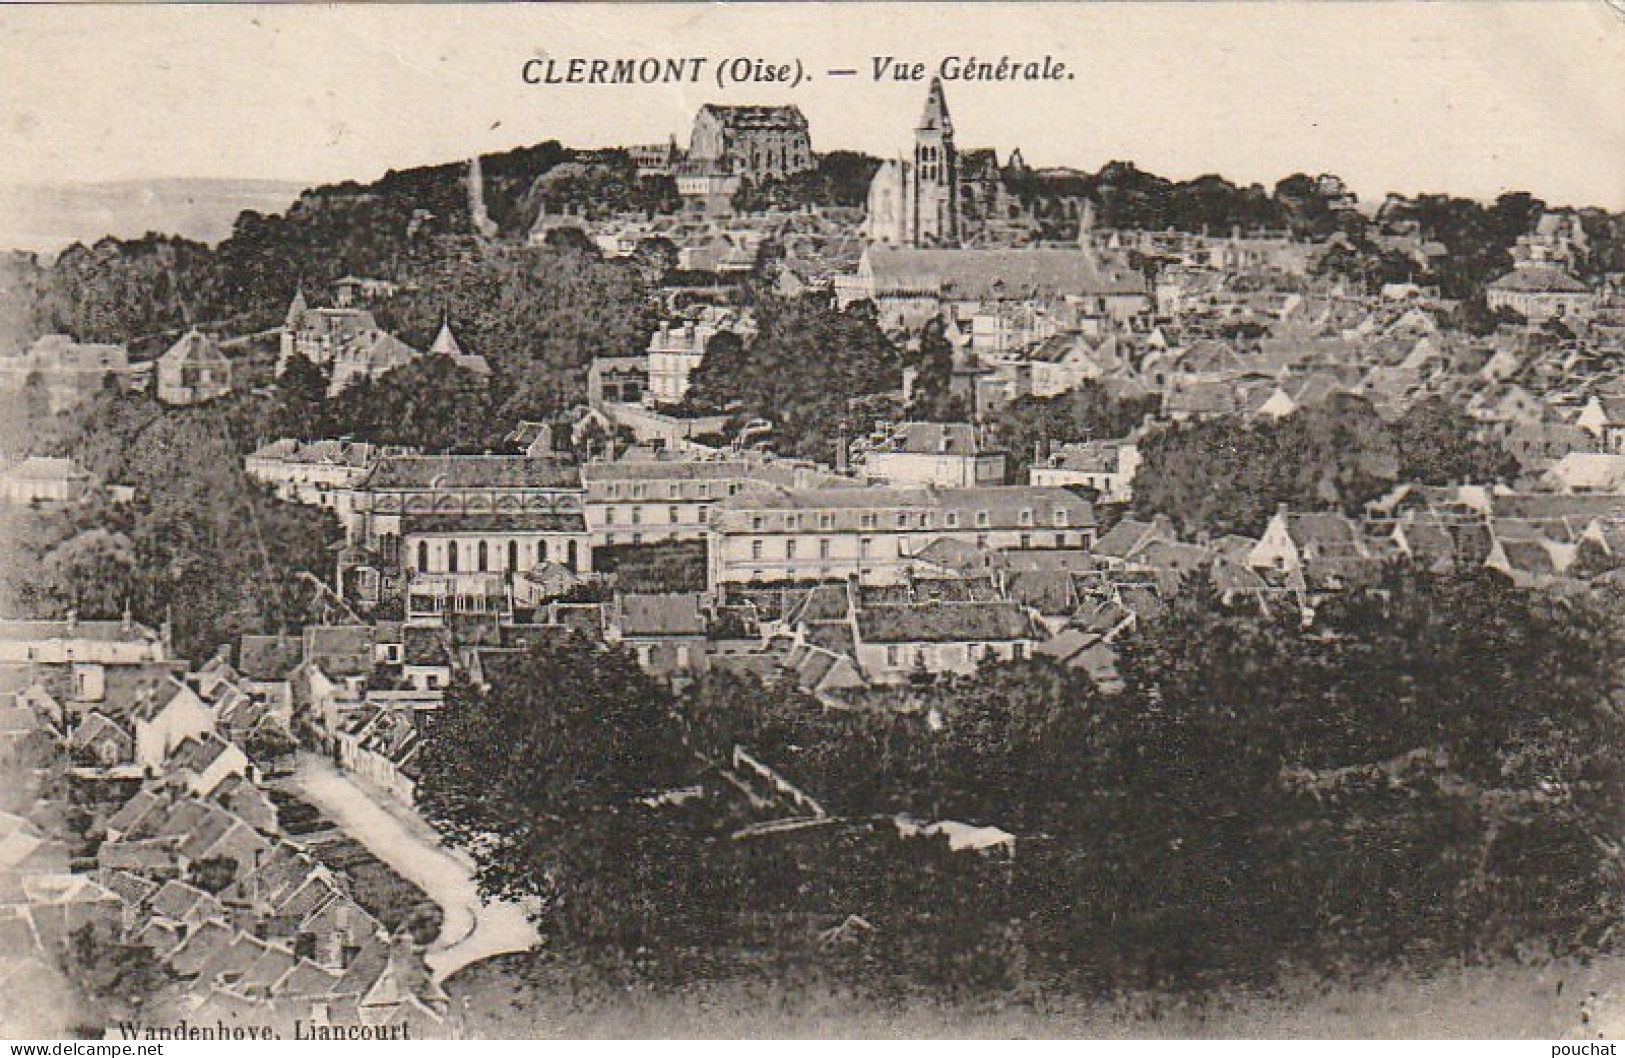 Z+ 8-(60) CLERMONT - VUE GENERALE - EDIT. WANDENHOVE , LIANCOURT - 2 SCANS - Clermont